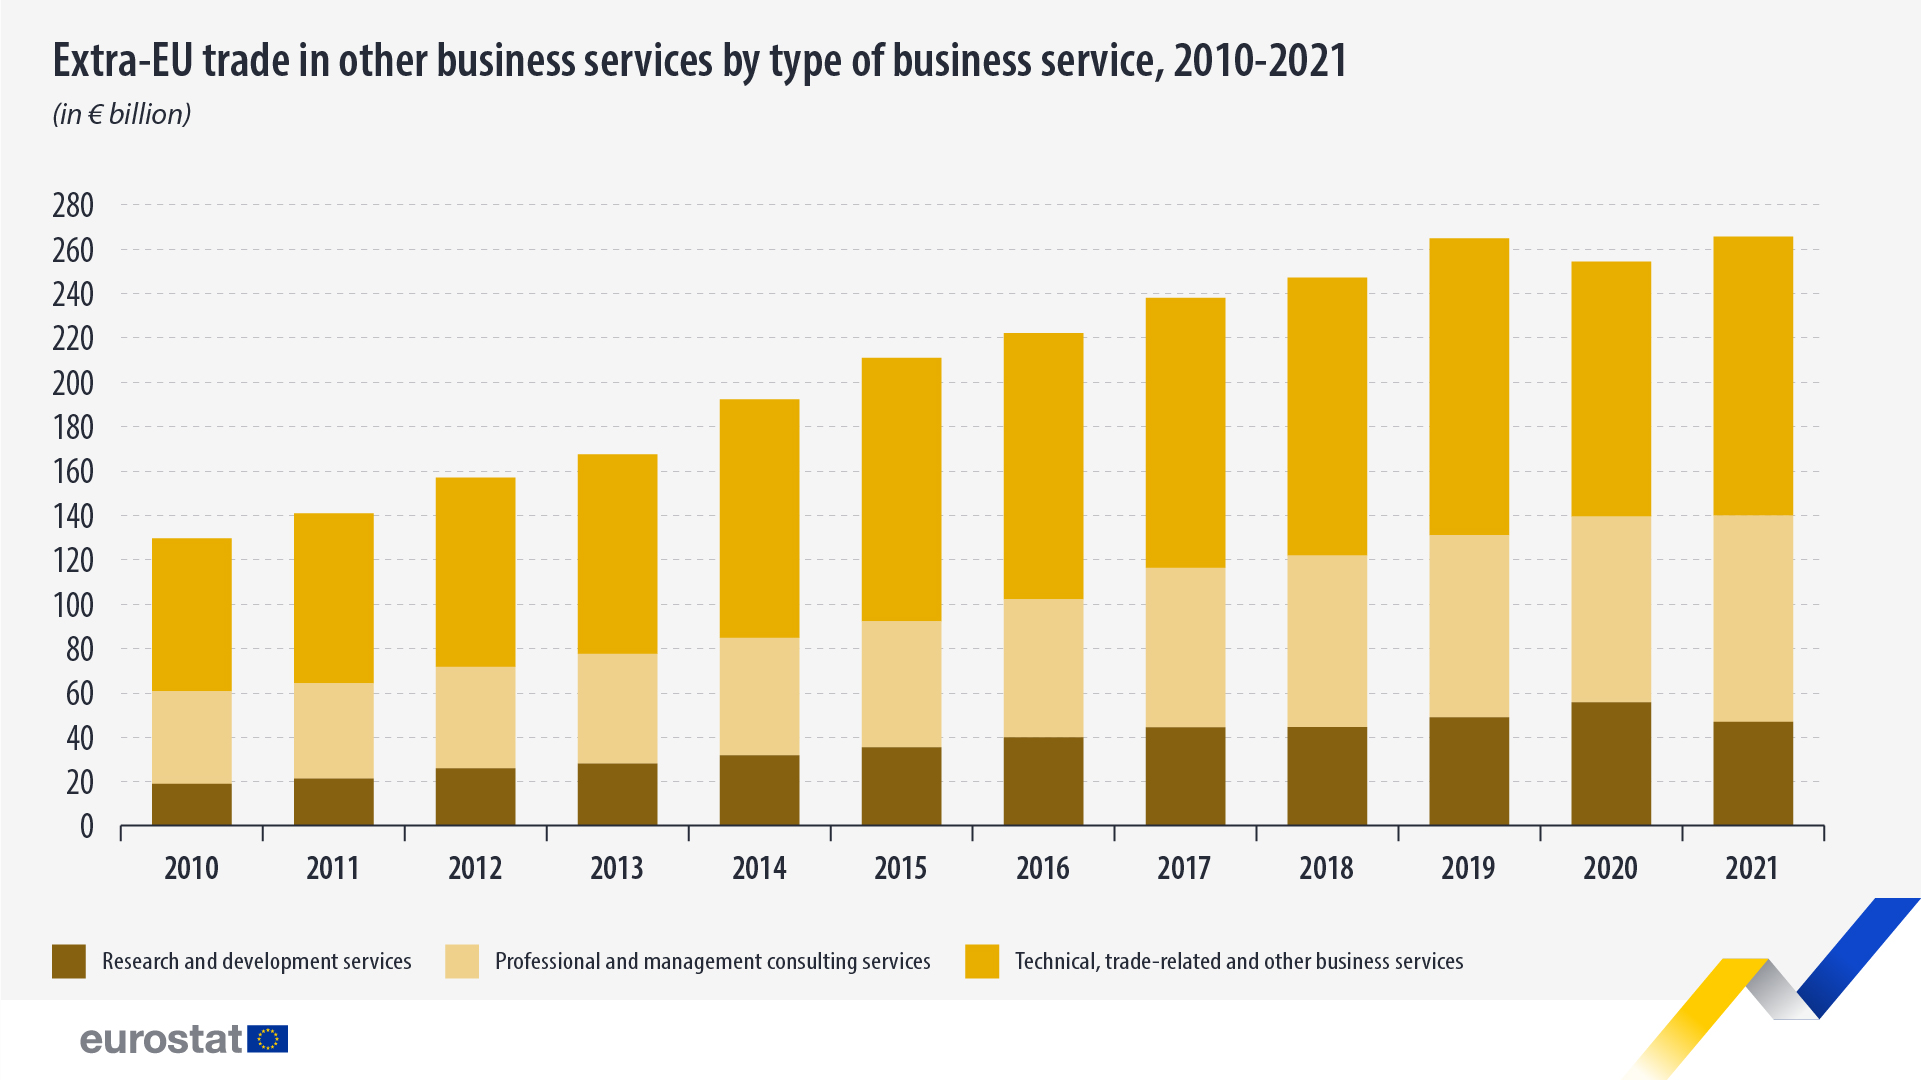 Γράφημα στοιβαγμένης ράβδου: Εμπόριο εκτός ΕΕ σε άλλες επιχειρηματικές υπηρεσίες ανά τύπο υπηρεσίας, 2010-2021, σε δισεκατομμύρια ευρώ